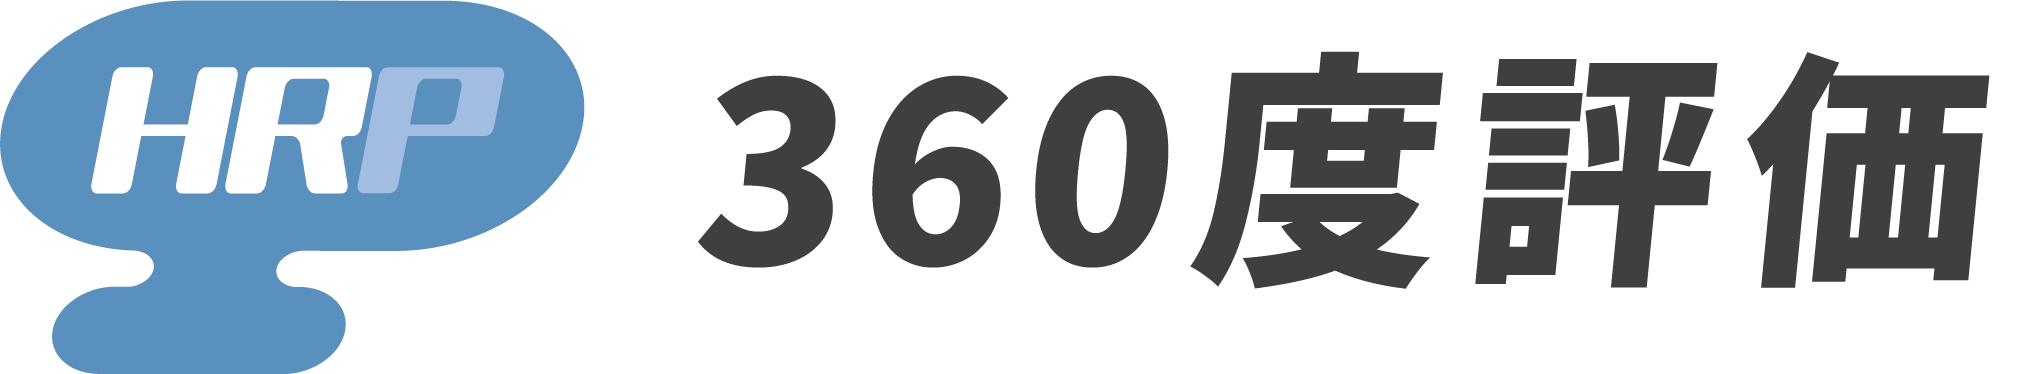 HR-Platform 360度評価ロゴ